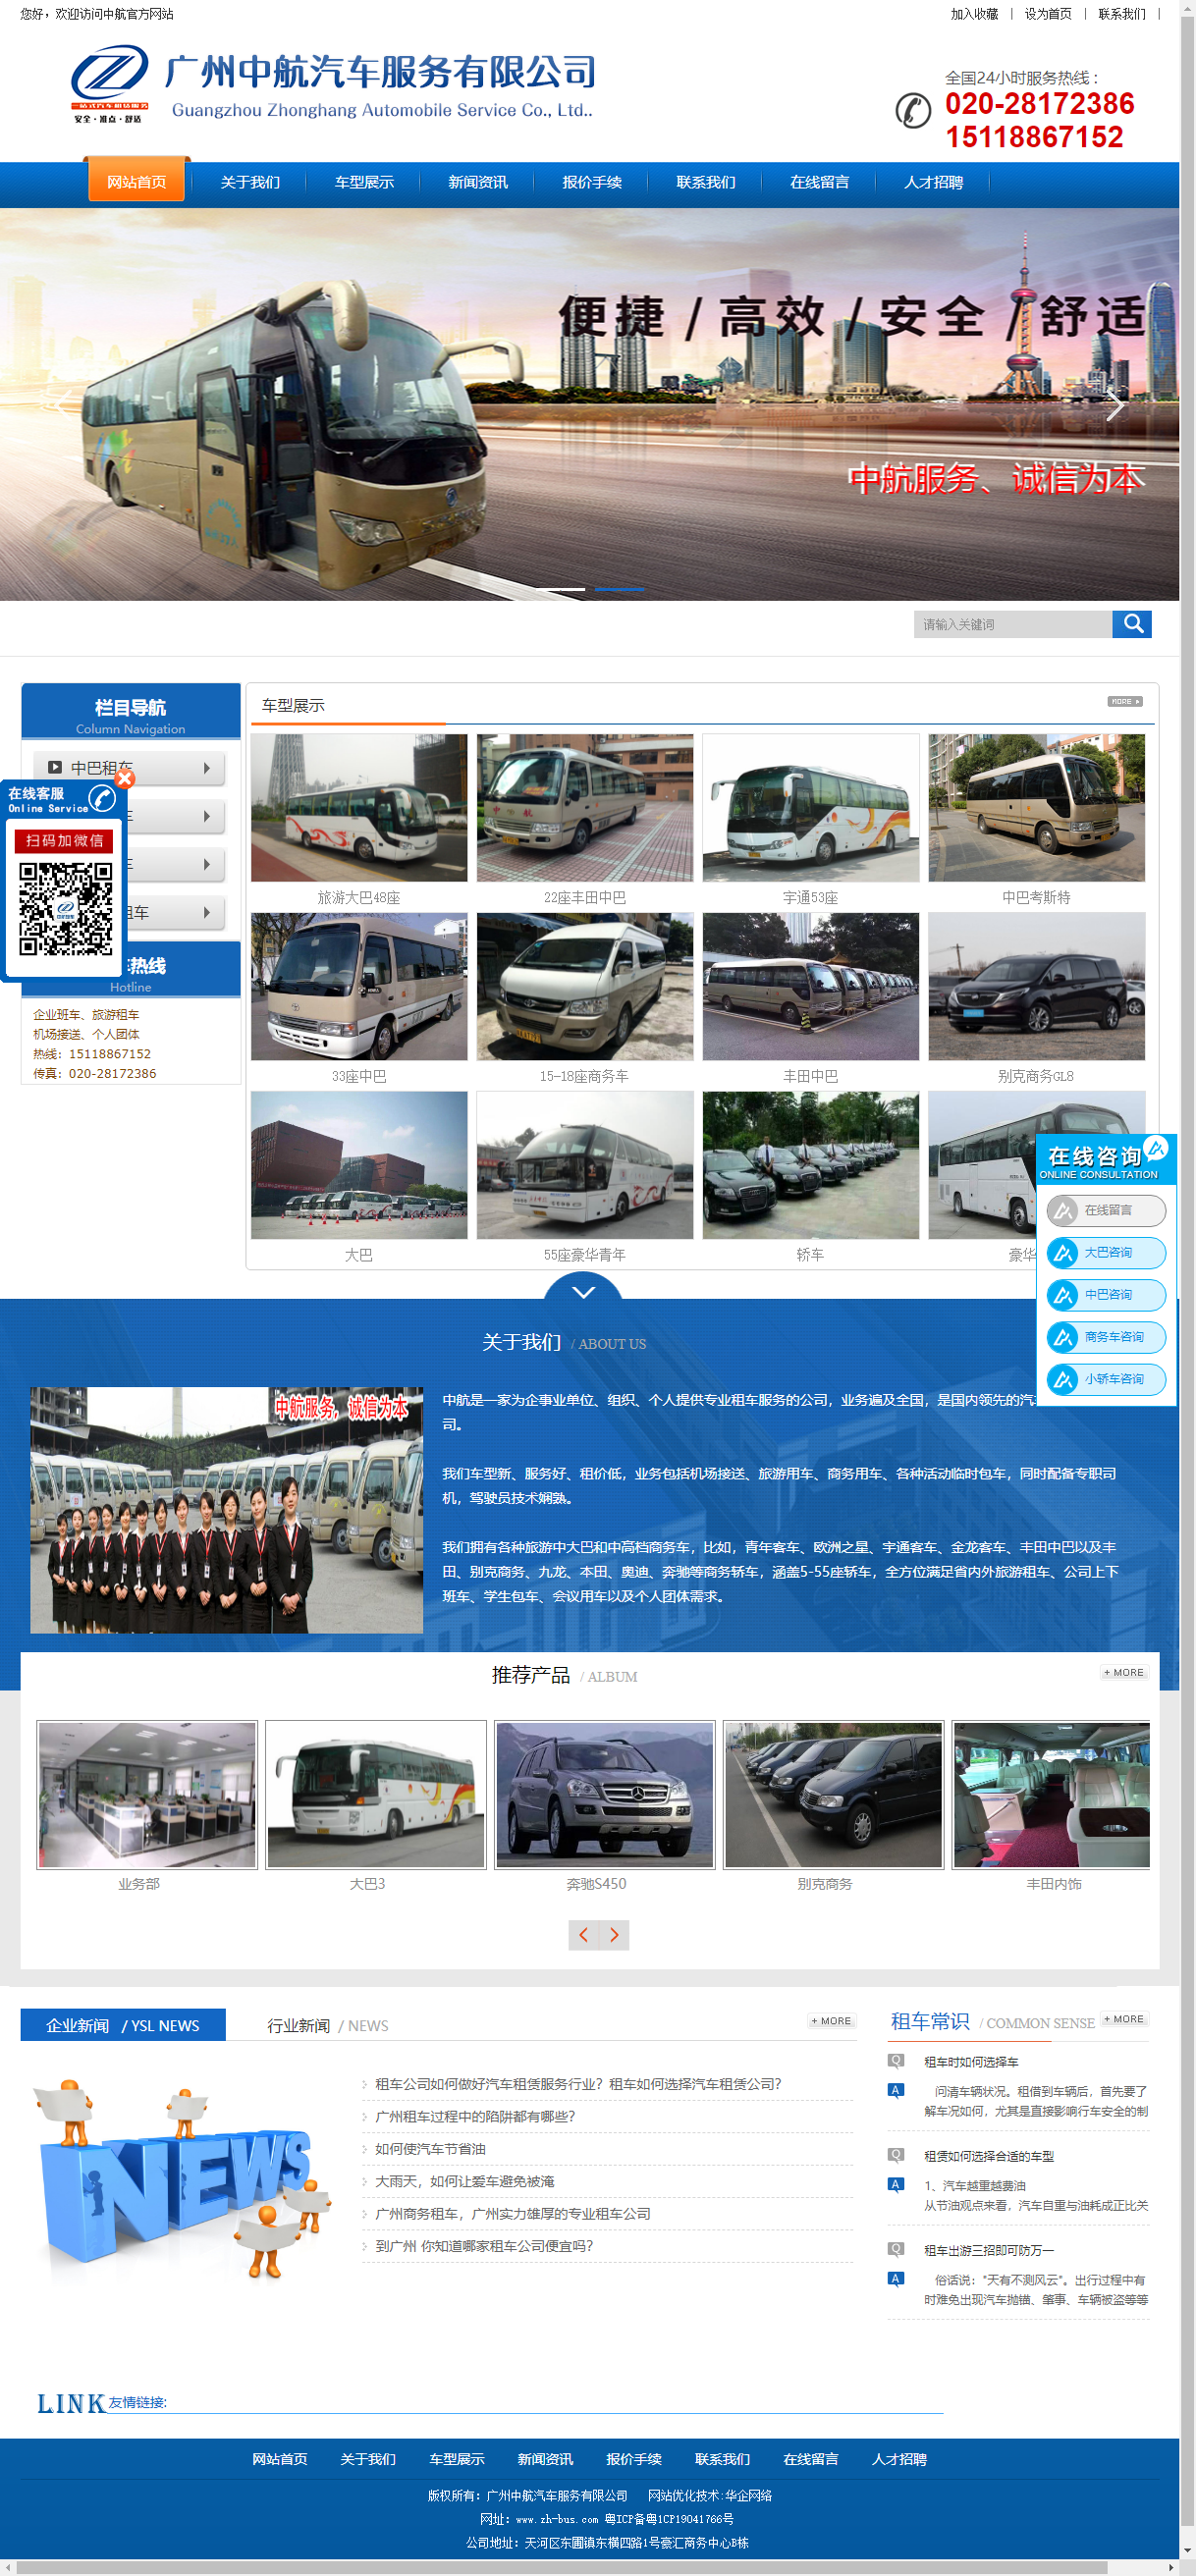 广州中航汽车服务有限公司网站案例